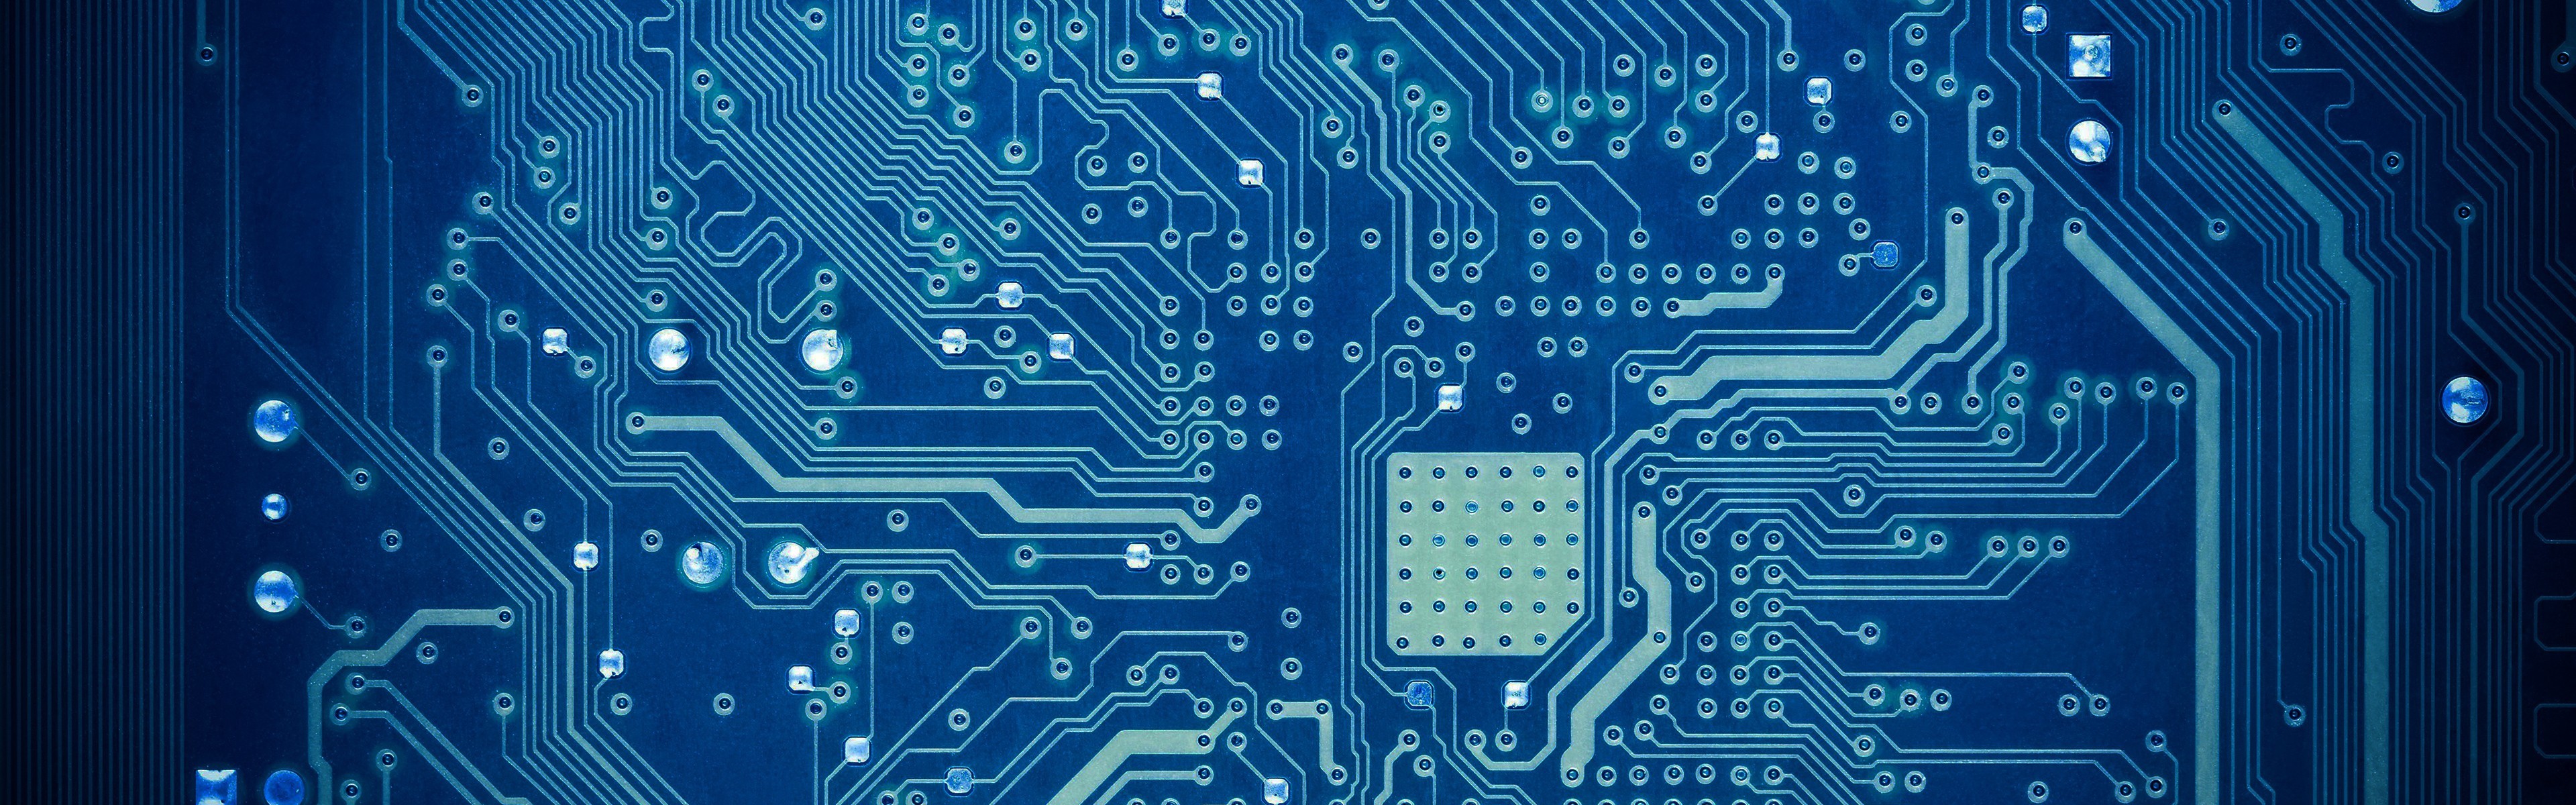 motherboard wallpaper,elektronisches ingenieurwesen,elektronik,blau,hauptplatine,elektronisches bauteil